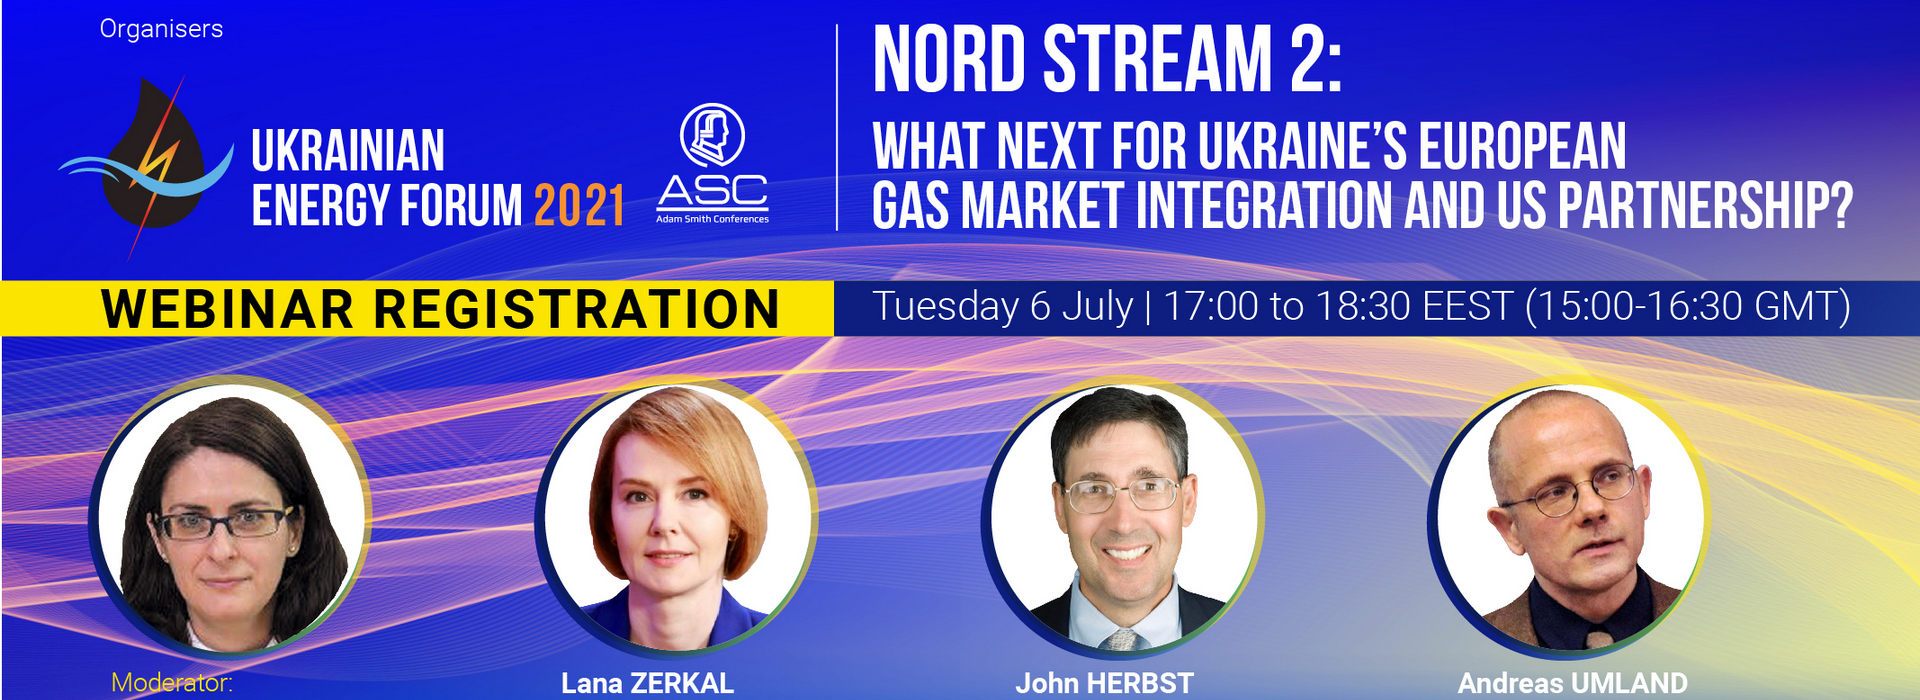 Онлайн вебінар щодо Північного потоку-2: Які перспективи має Україна в інтеграції до Європейського газового ринку та в партнерстві з США?